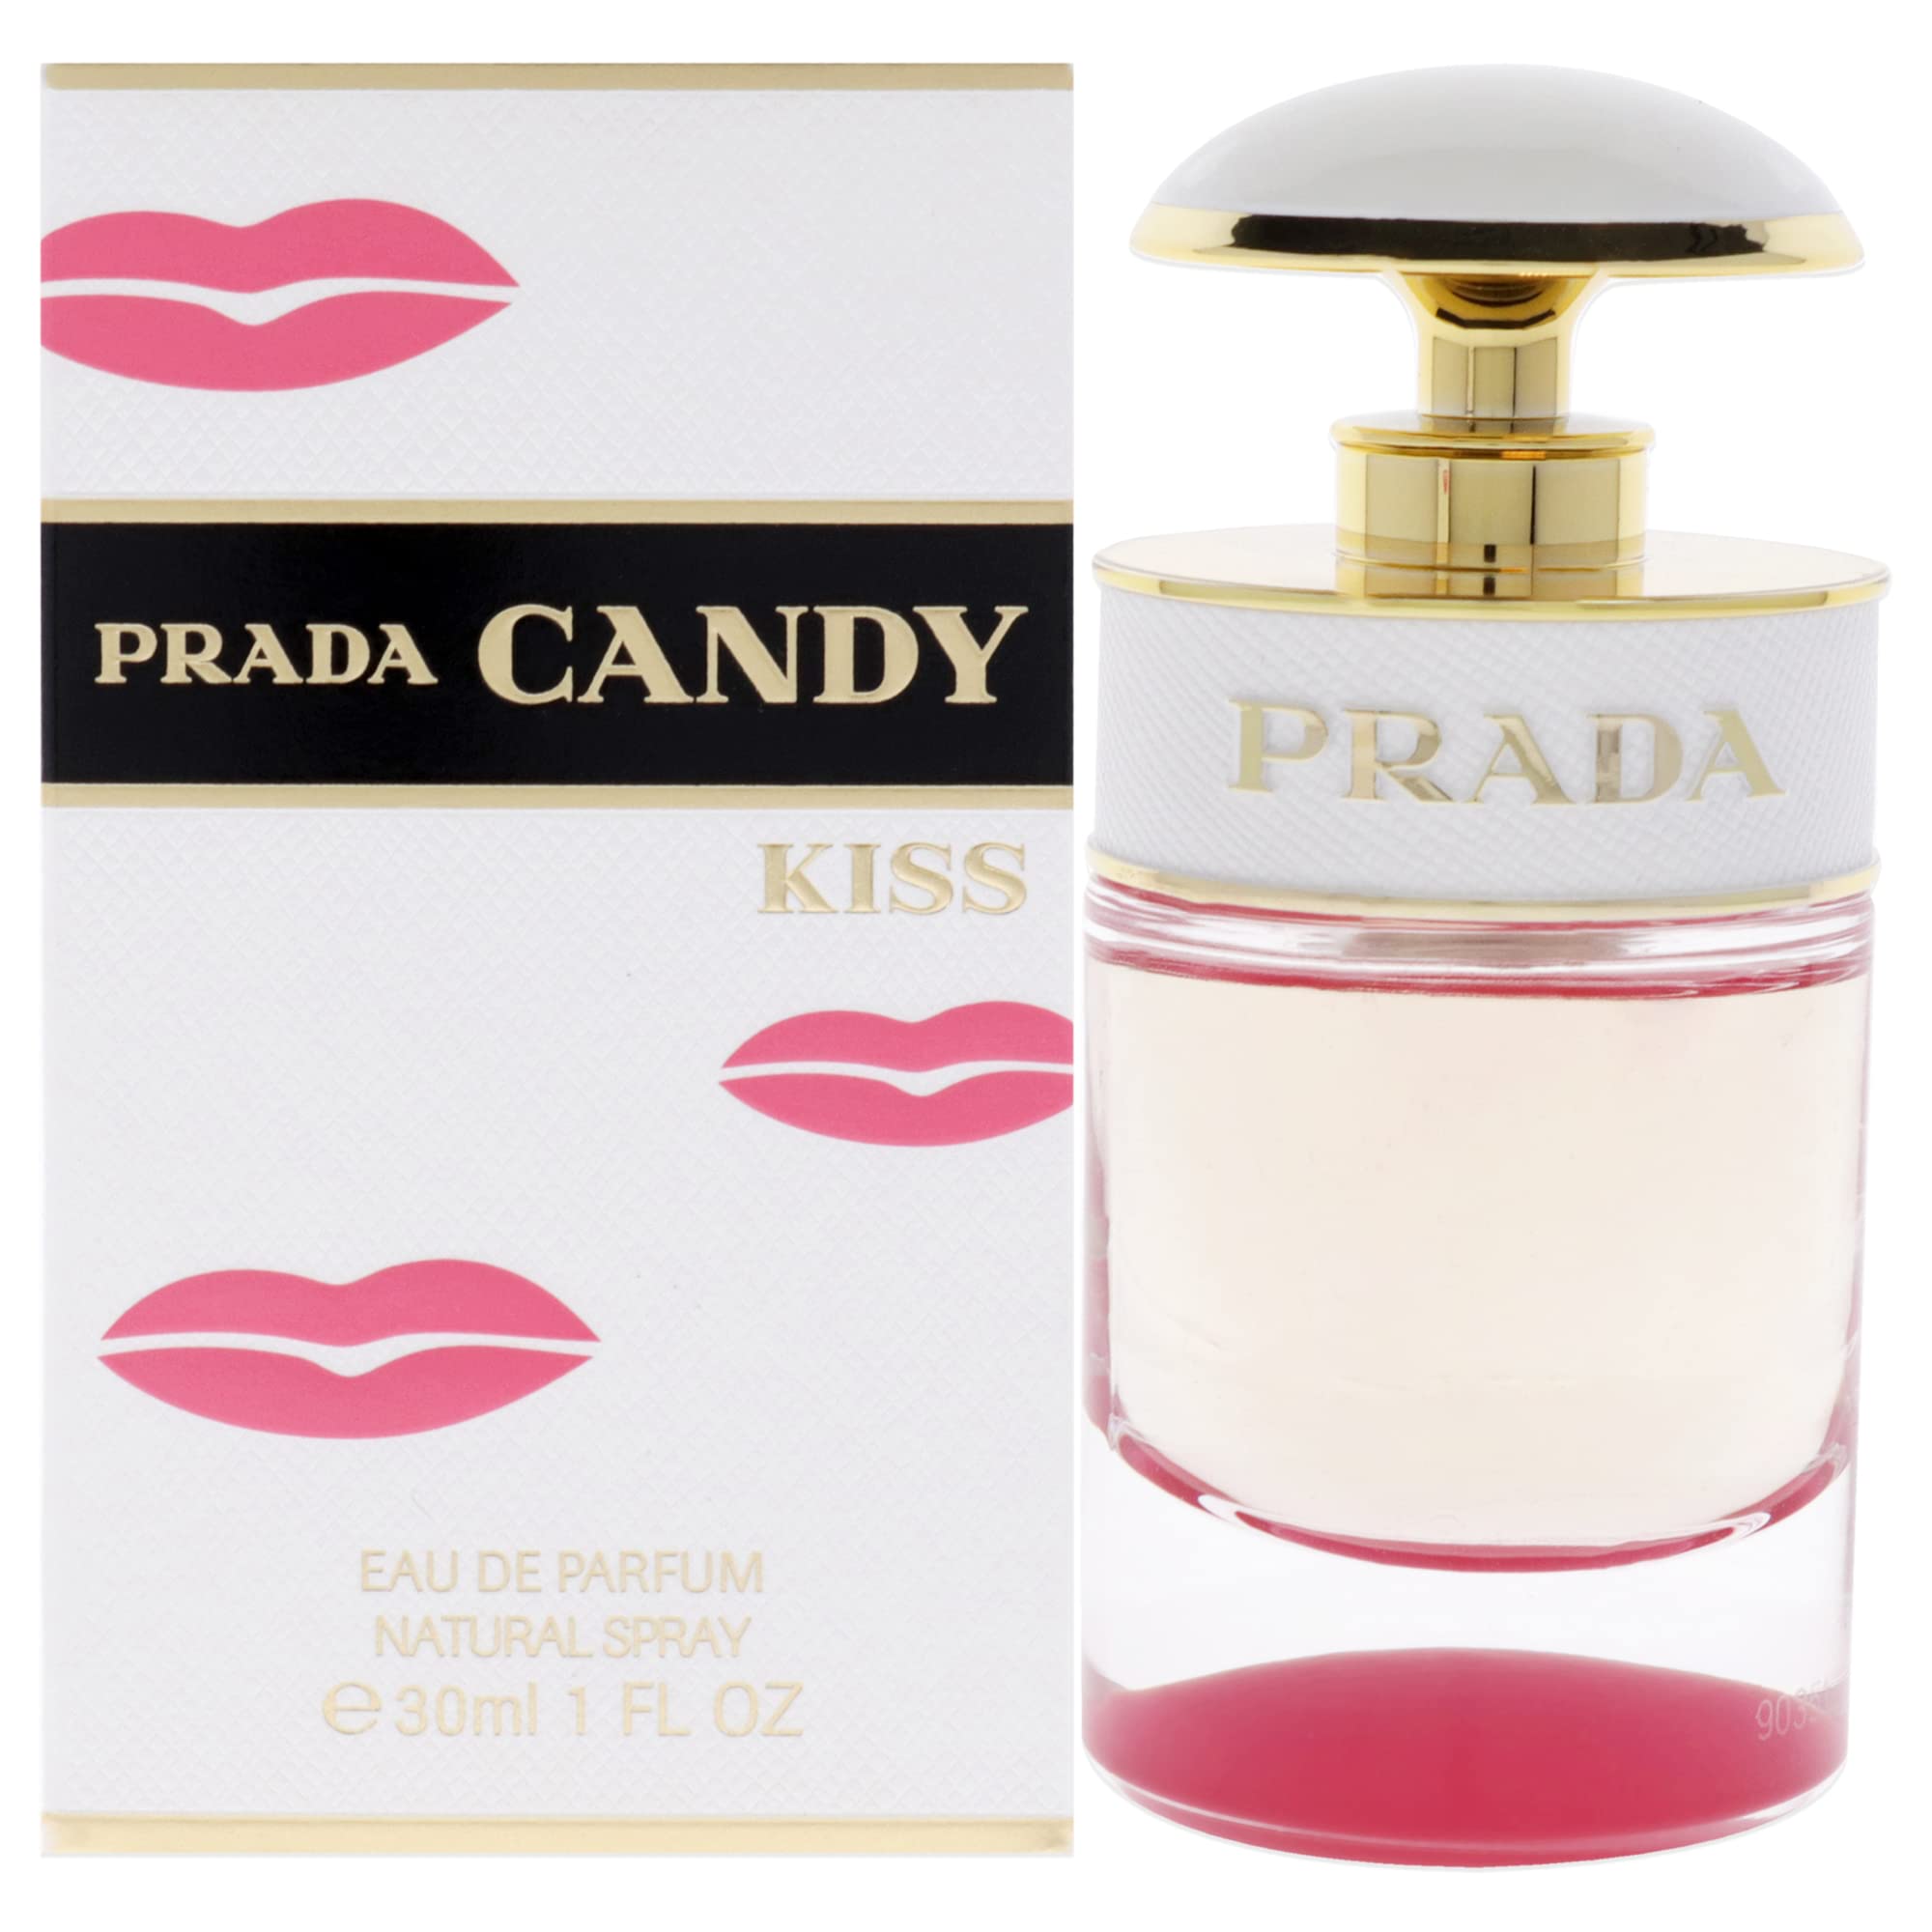 Prada Candy Kiss Eau De Parfum Spray 30ml